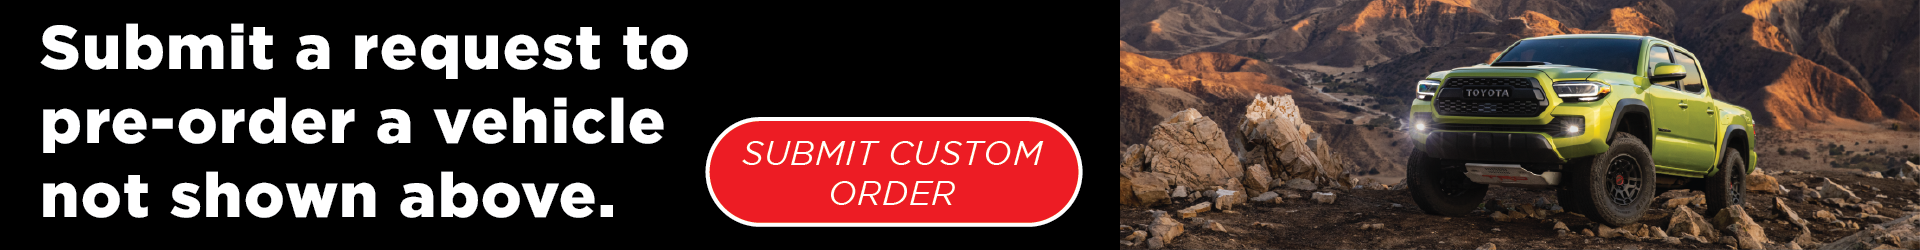 Start your custom pre-order now!